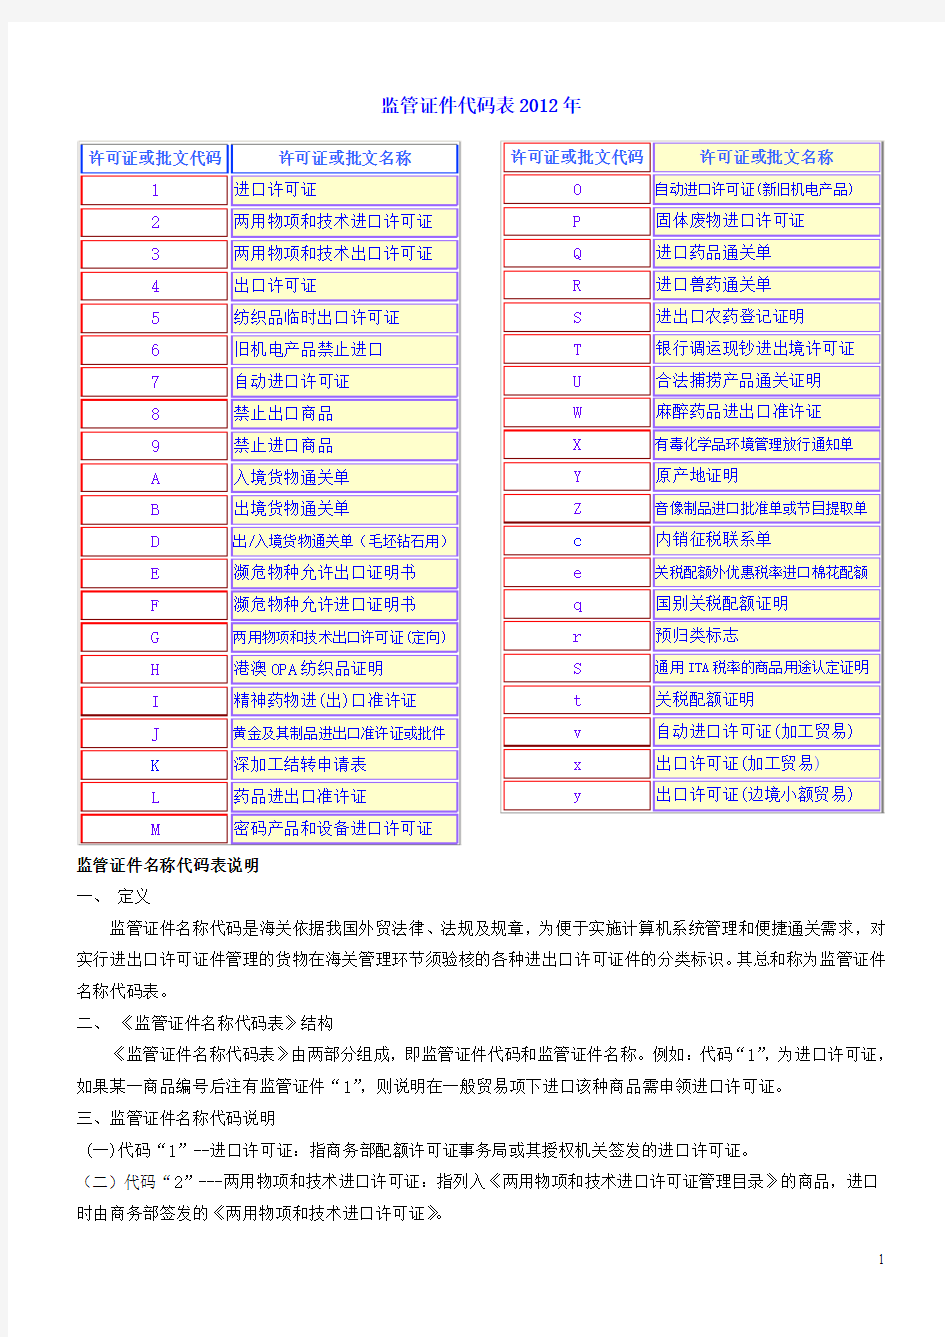 2012年监管证件代码表